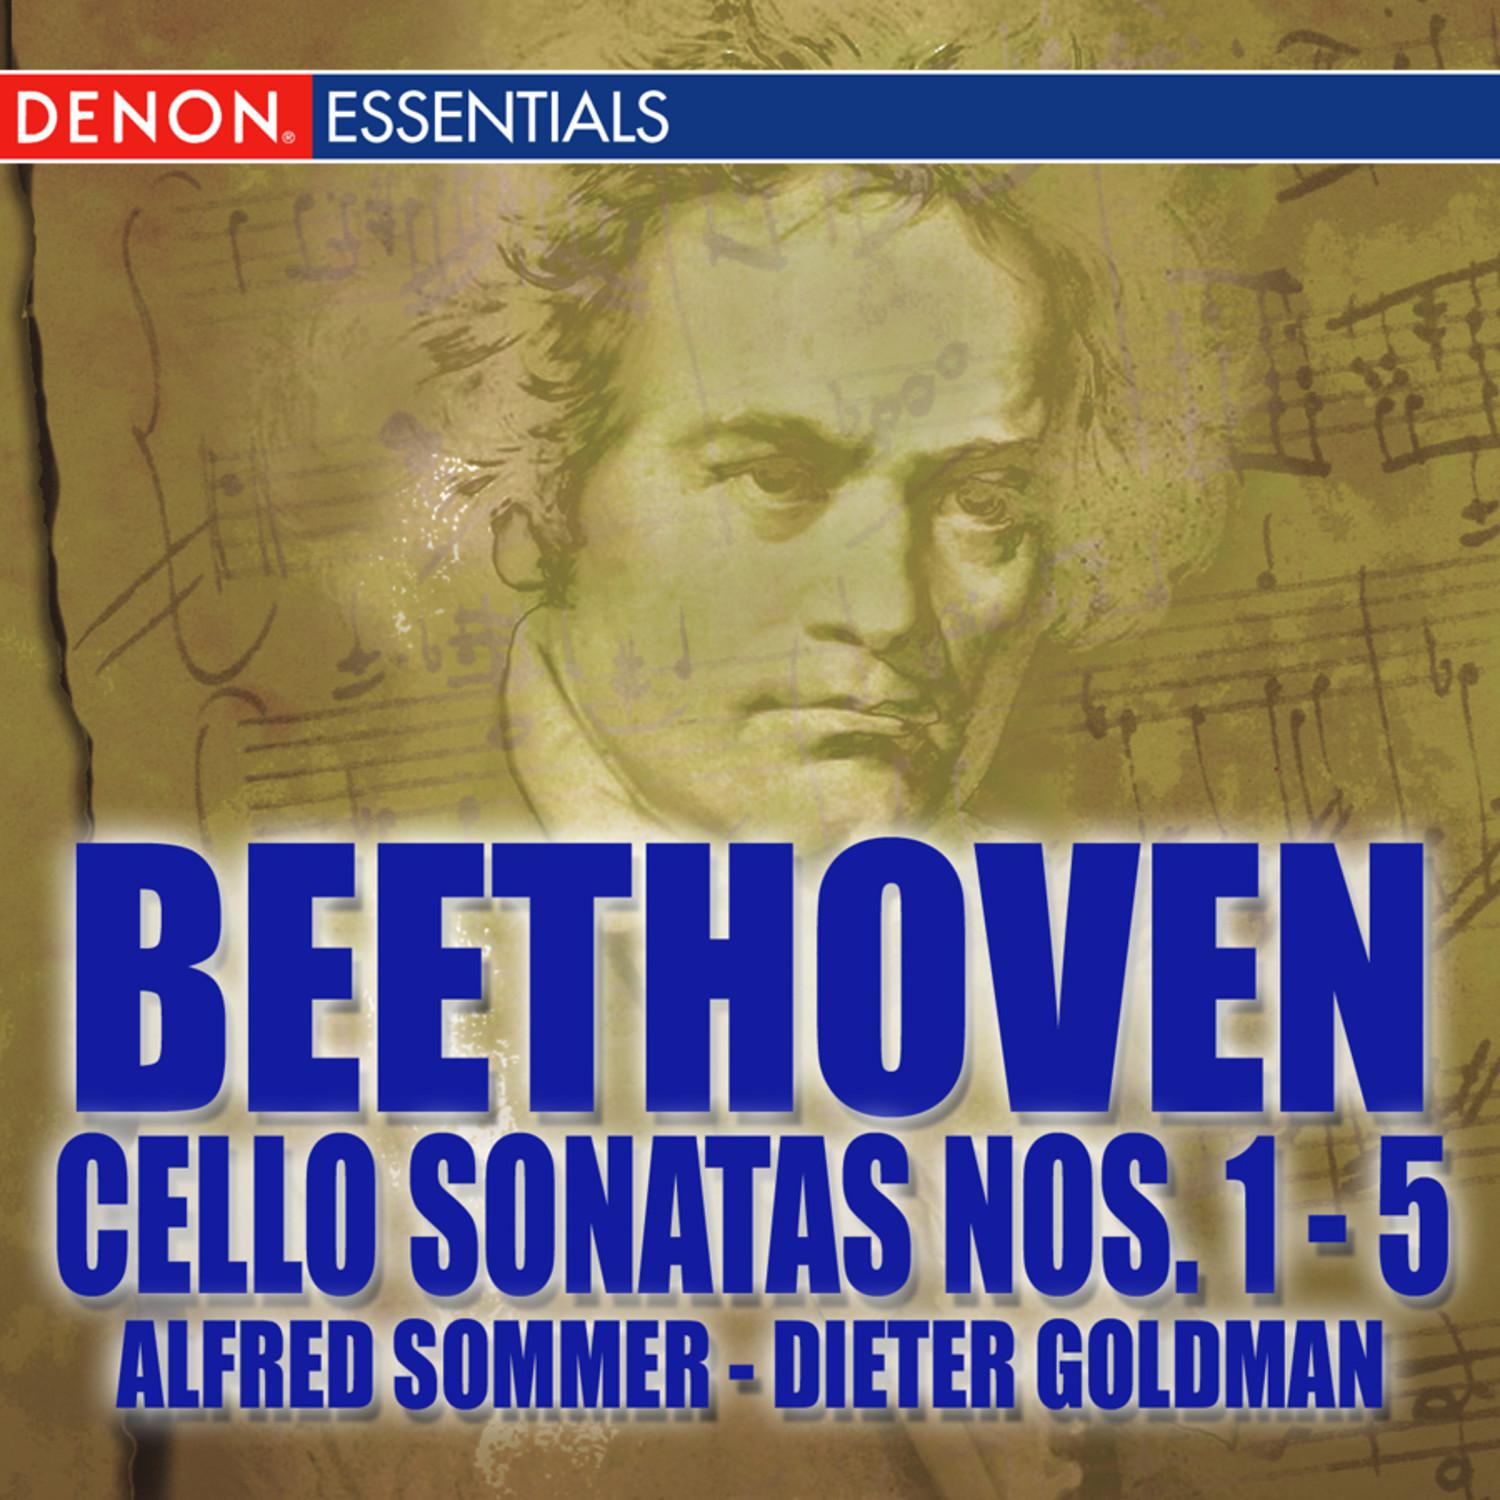 Cello Sonata No. 5 in C Major, Op. 102, No. 2: Allegro con brio - Adagio con molto sentimento d'affectto - Allegro fugato